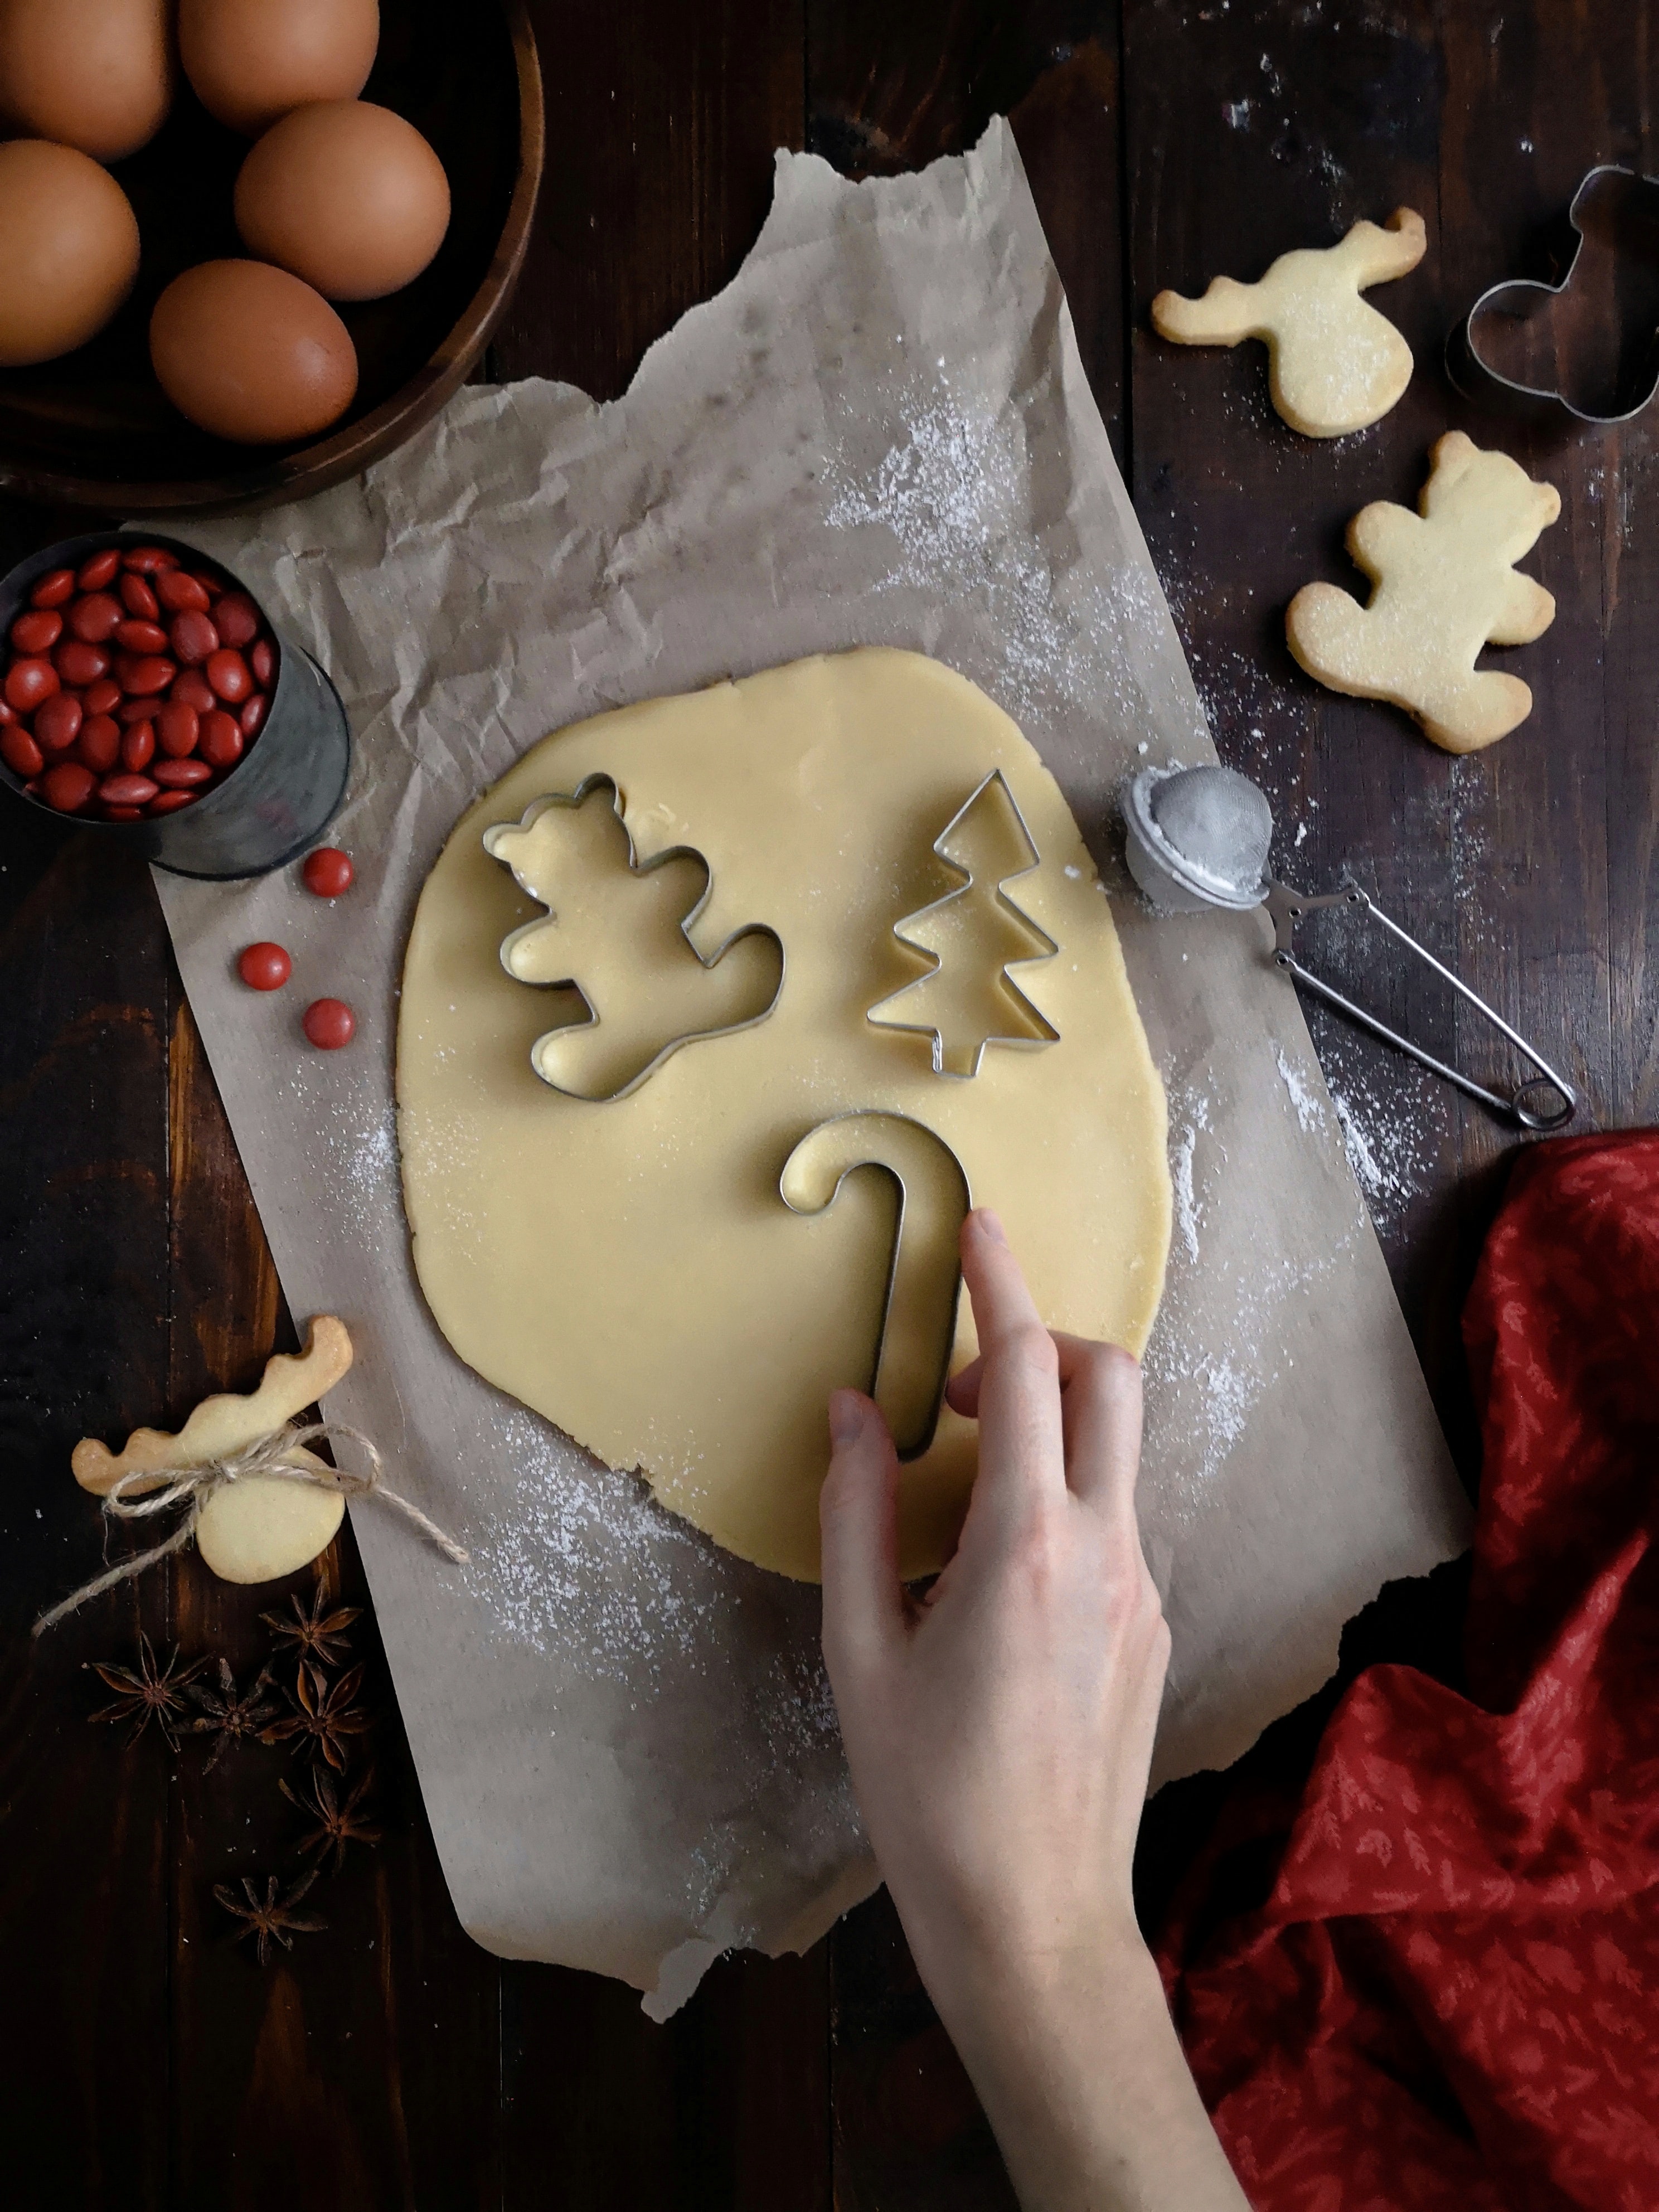 Μπορείς κι εσύ να φτιάξεις τα τραγανά κλασσικά Gingerbread μπισκότα με την απόλυτη συνταγή